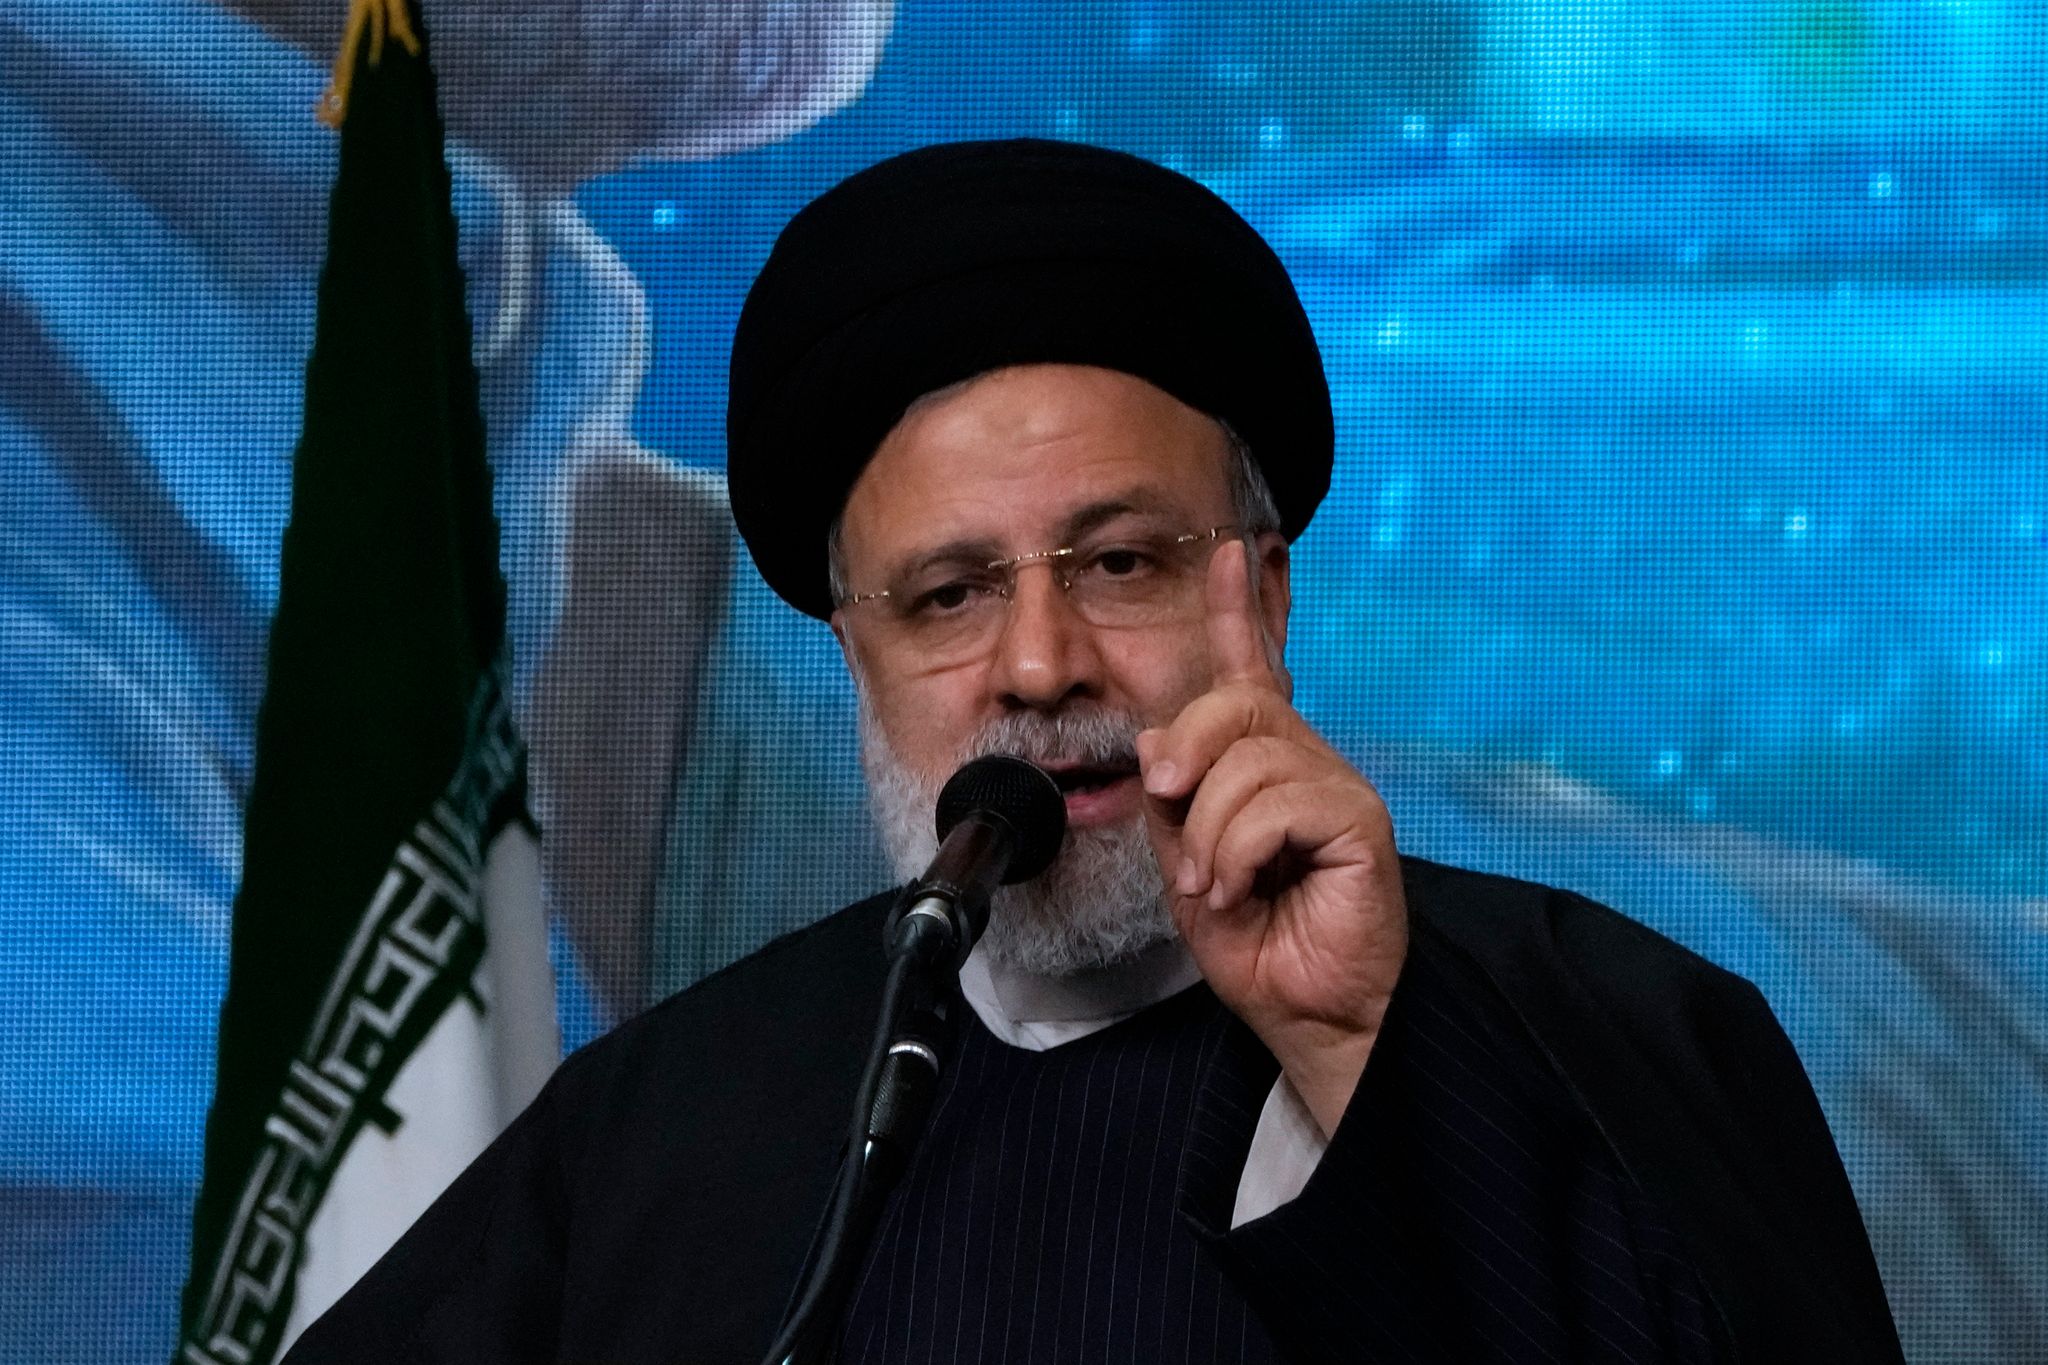 Der iranische Präsident Ebrahim Raisi hat eine entschiedene Reaktion angekündigt. Die Staatsführung verurteilte die Attacke aufs Schärfste, vermied aber Schuldzuweisungen.